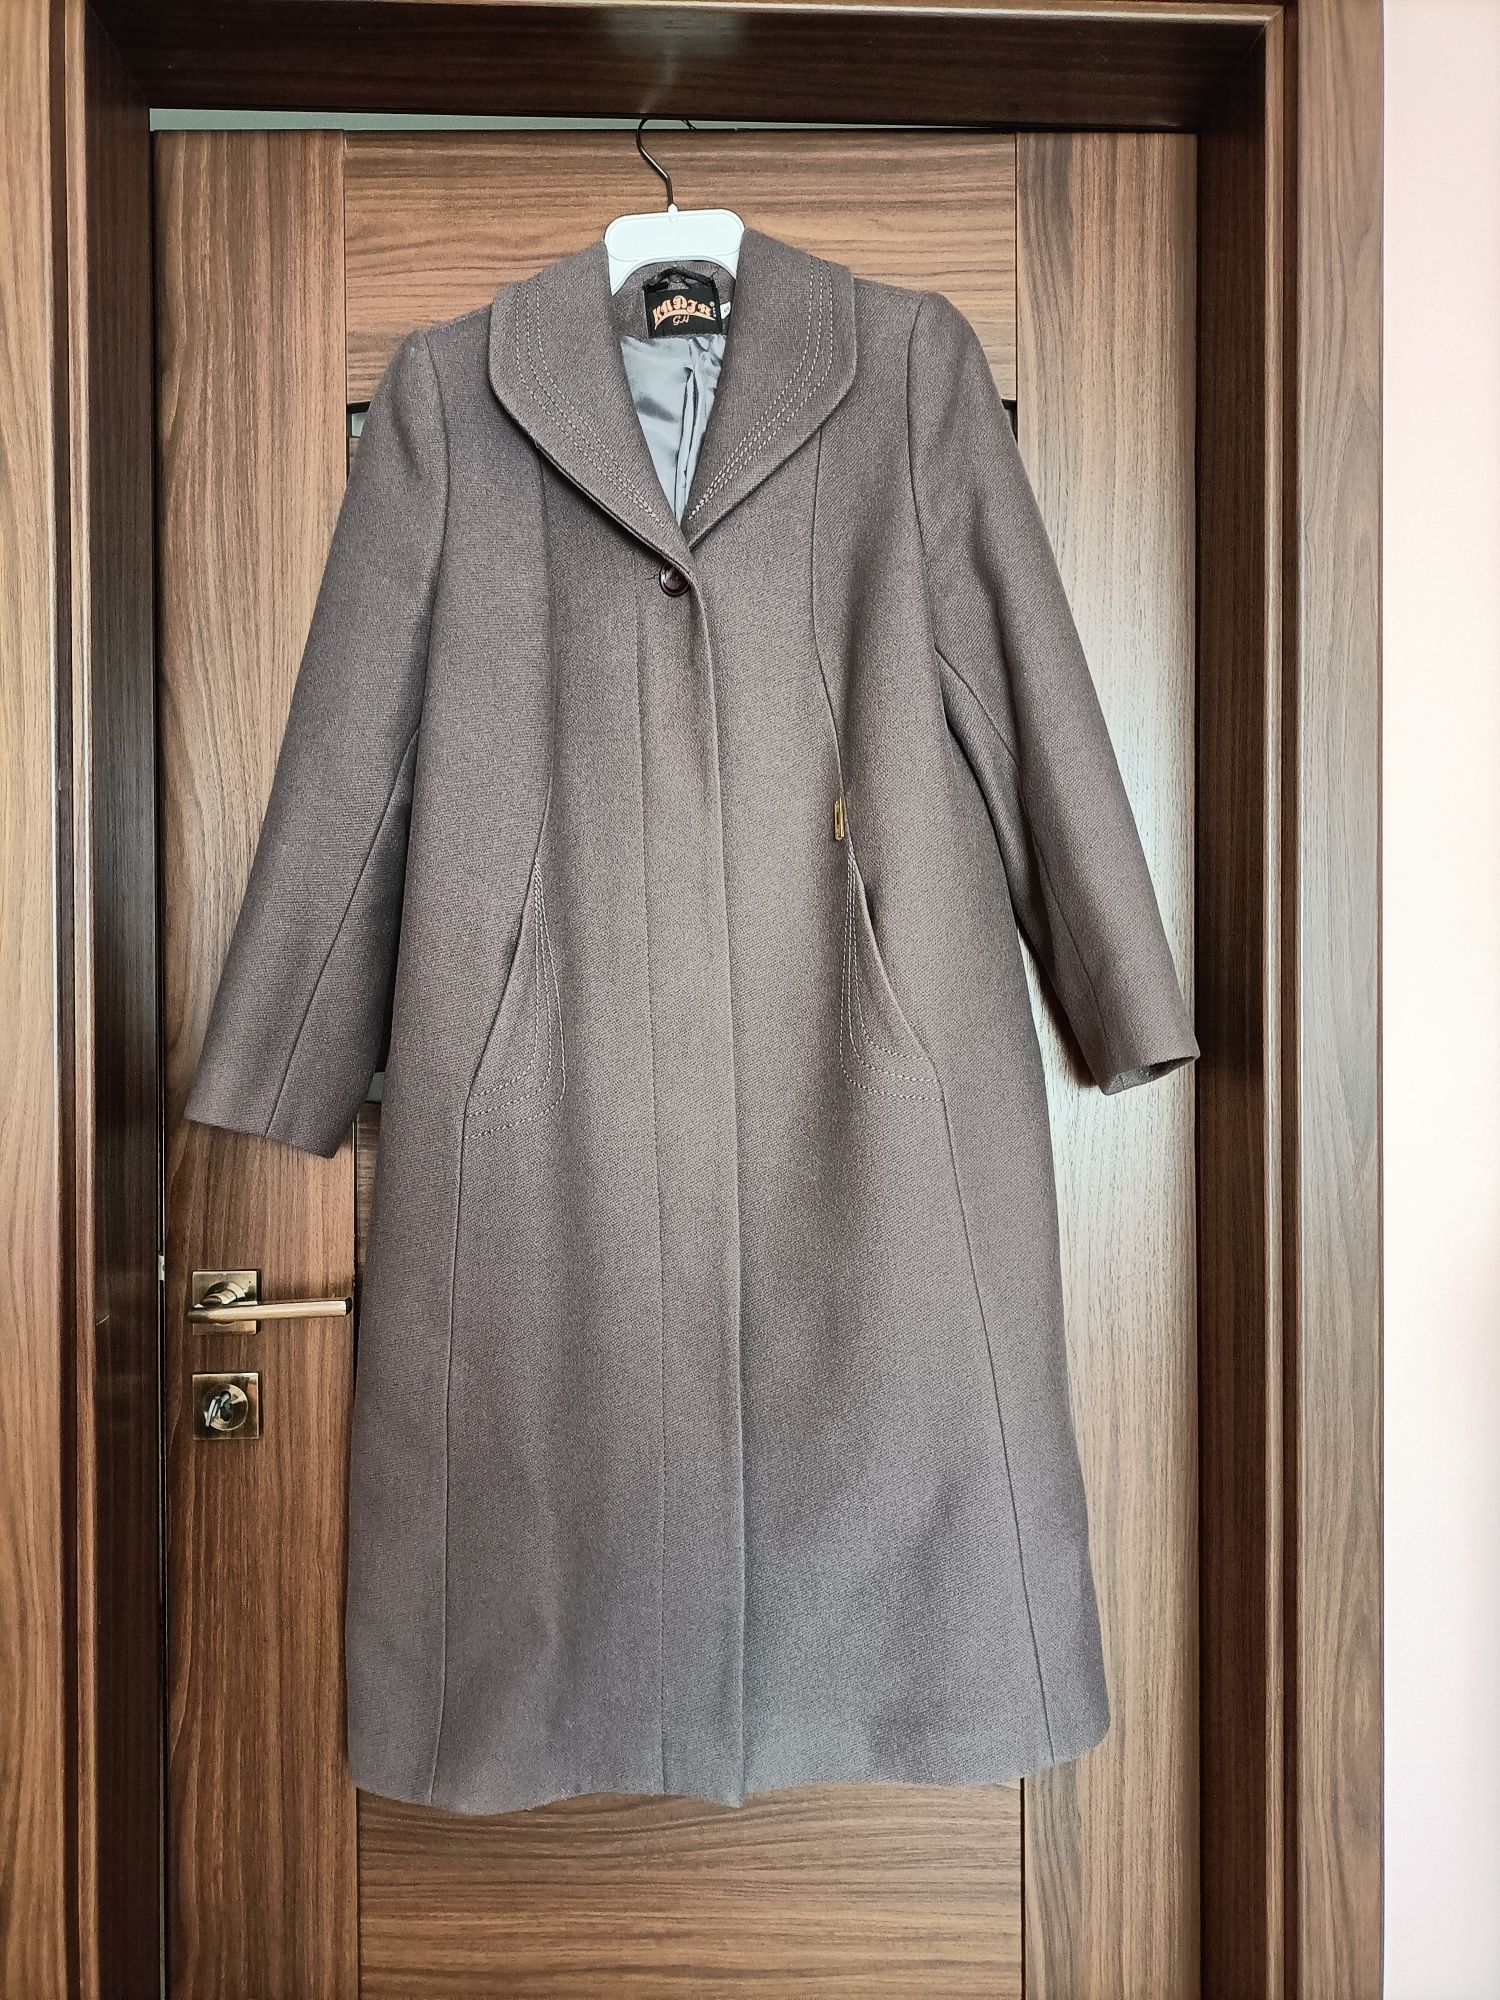 Fioletowy płaszcz damski długi klasyczny zimowy r. 44